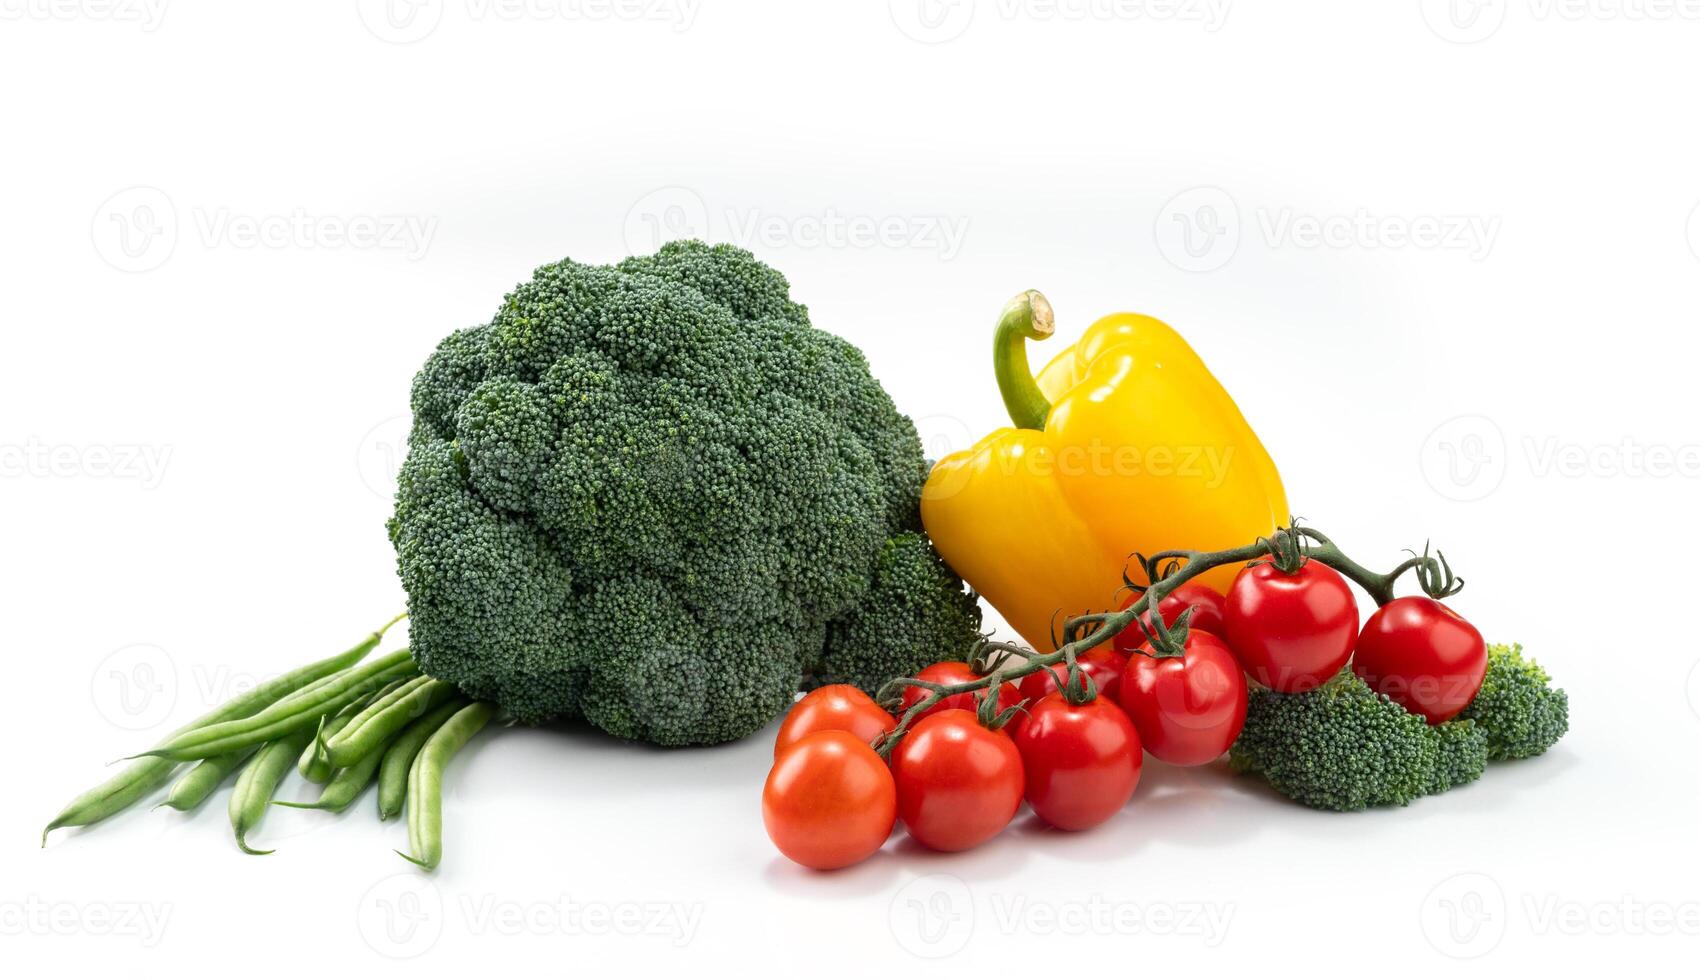 sammansättning av grönsaker på en vit bakgrund broccoli, grön ättikslag, peppar och körsbär tomater foto